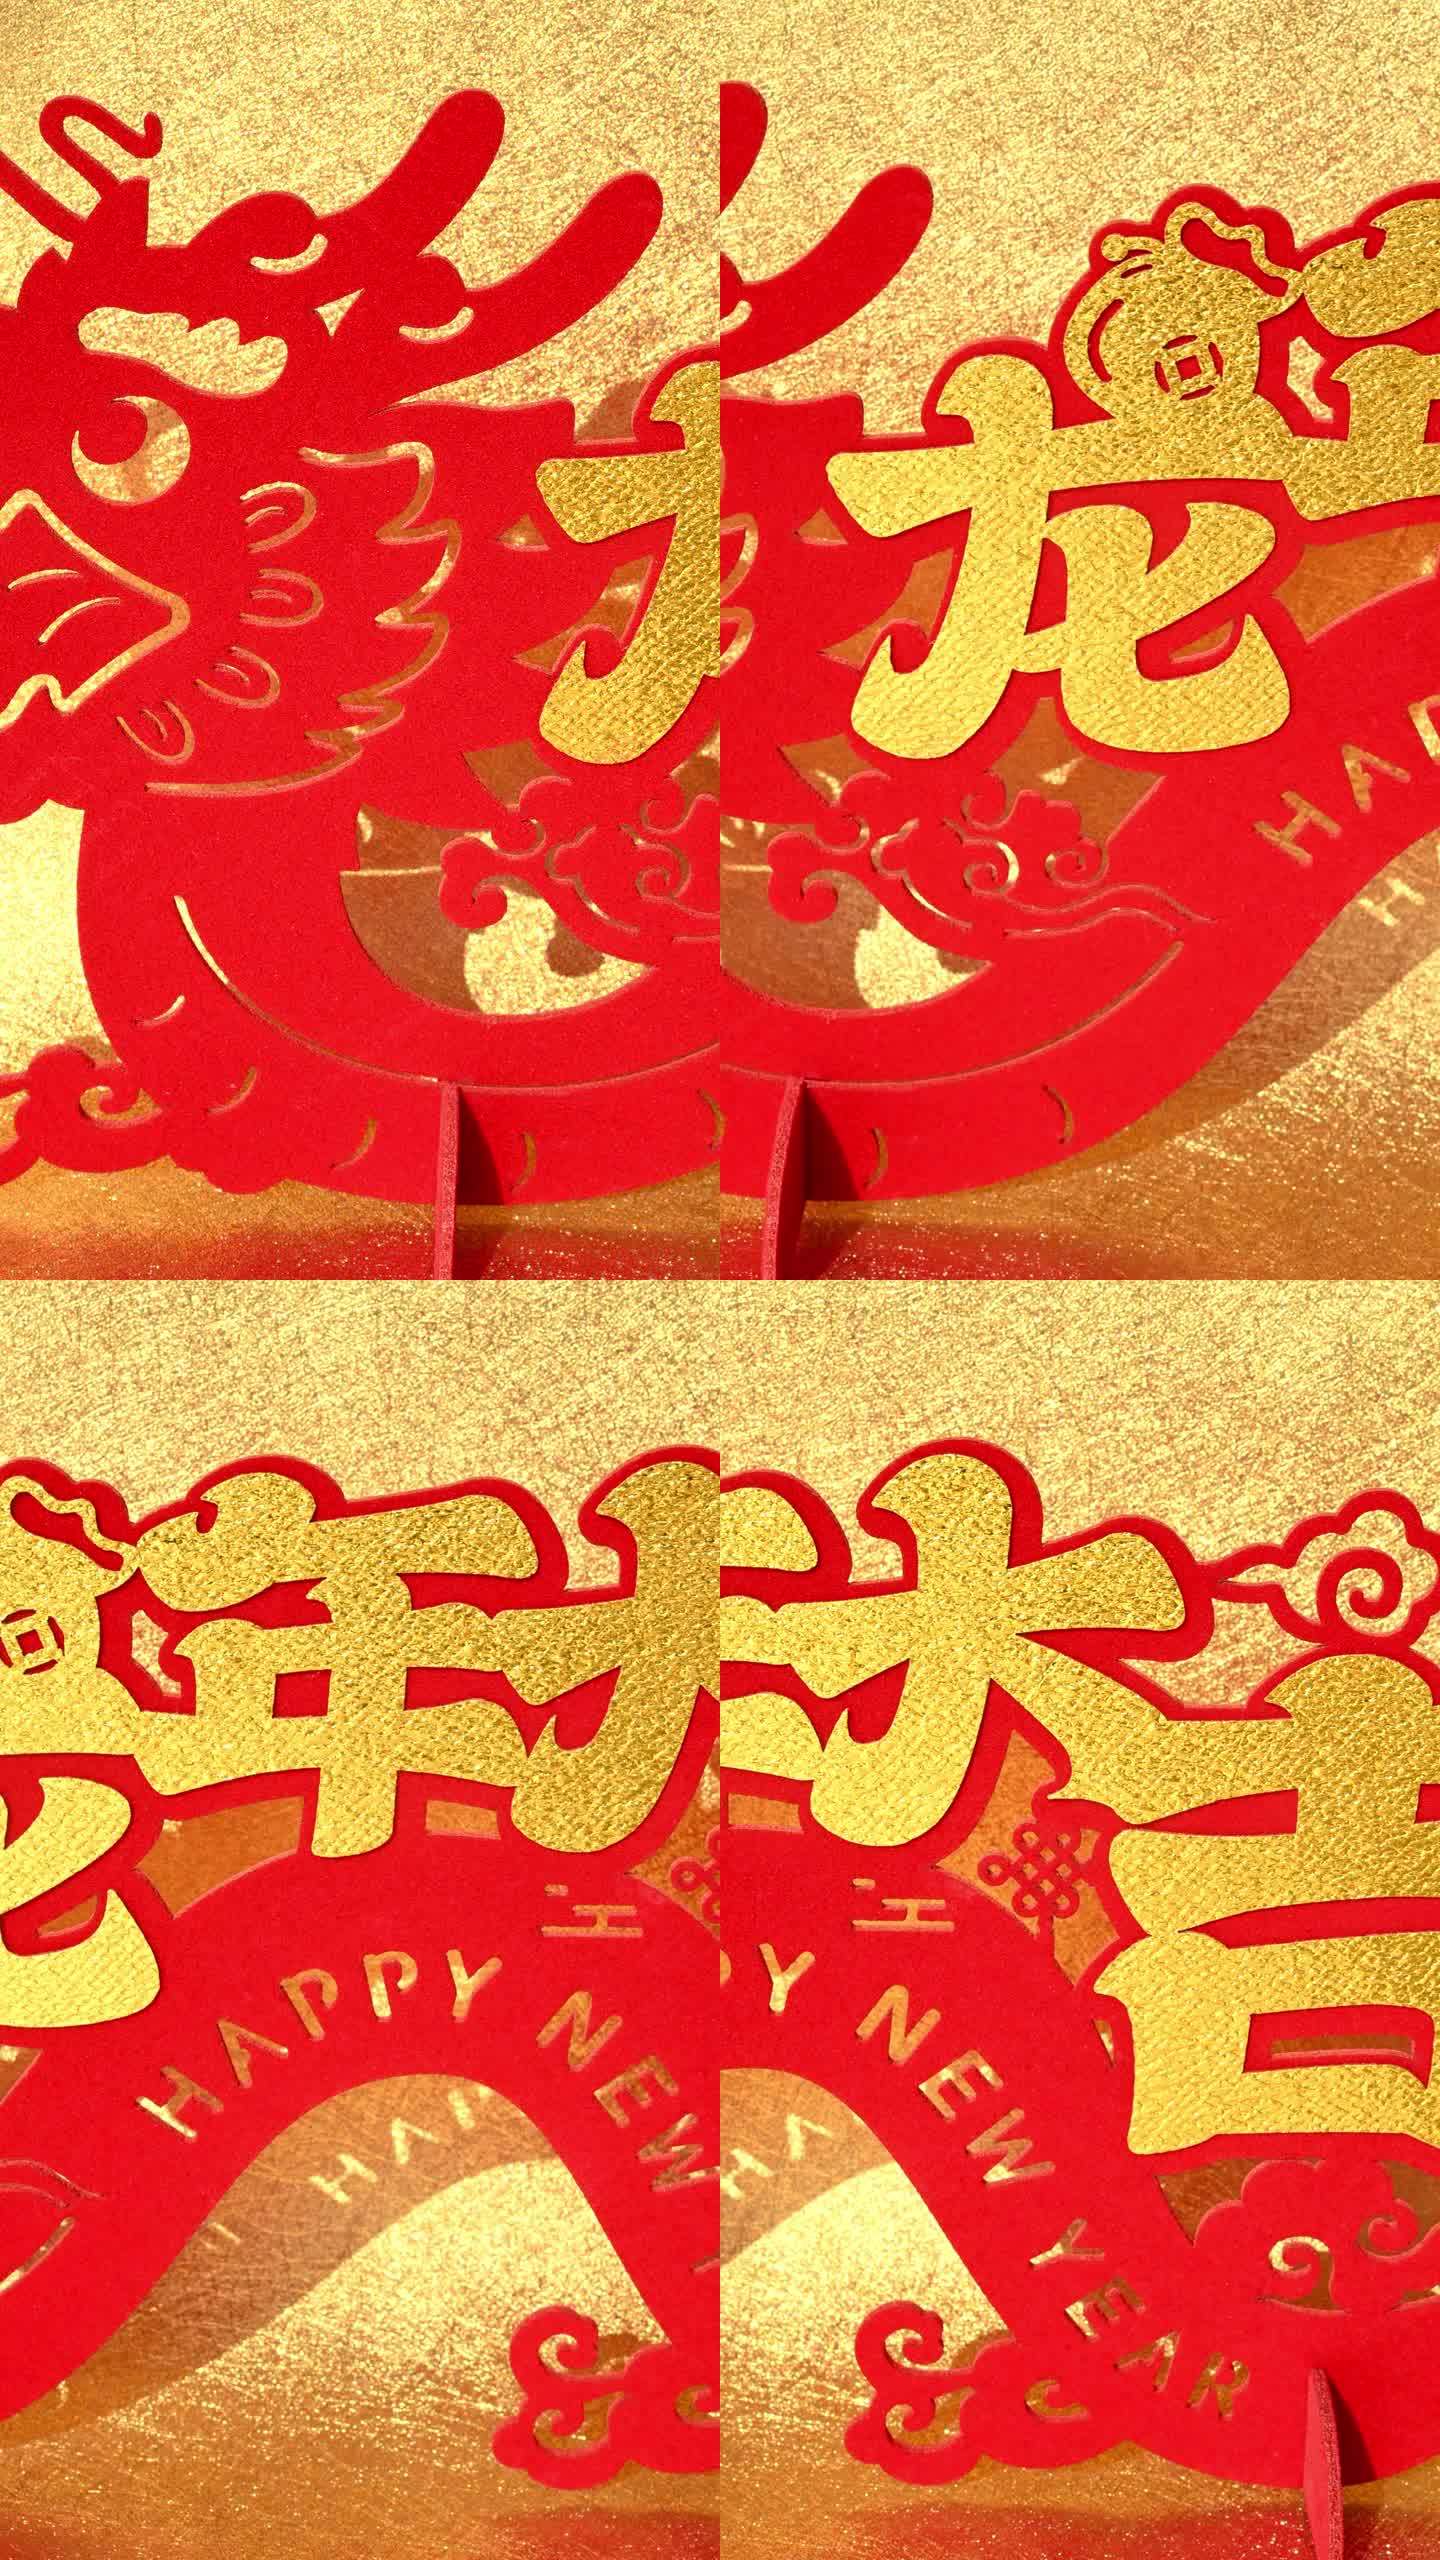 农历龙年吉祥物剪纸金色背景在垂直英文翻译的四个中文字是龙年好运和没有标志没有商标